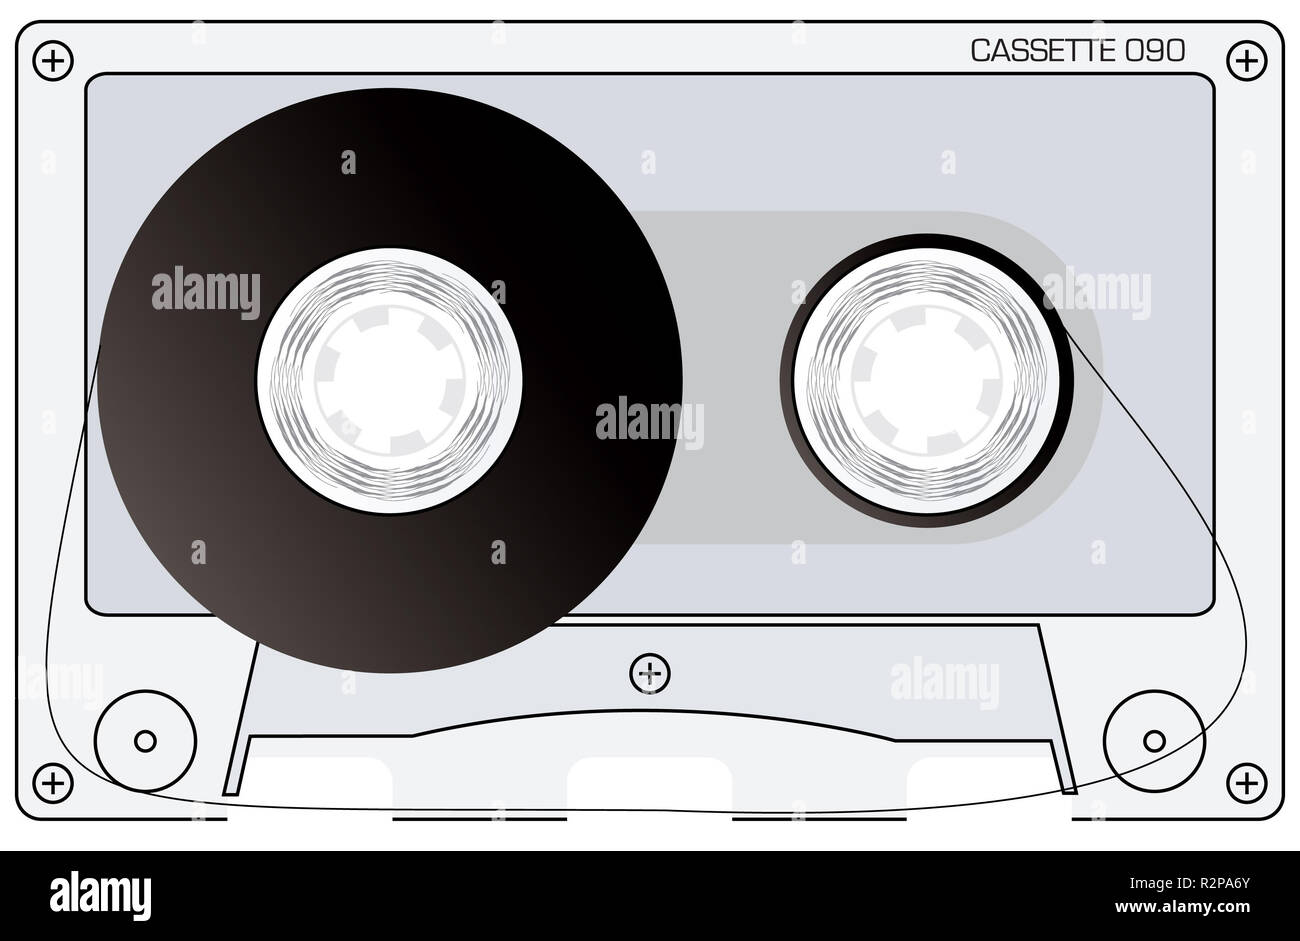 Предыдущее аудио. Кассета с пленкой. Аудиокассеты обои. Кассета с пленкой рисунок. Размотанная аудиокассета в векторе.